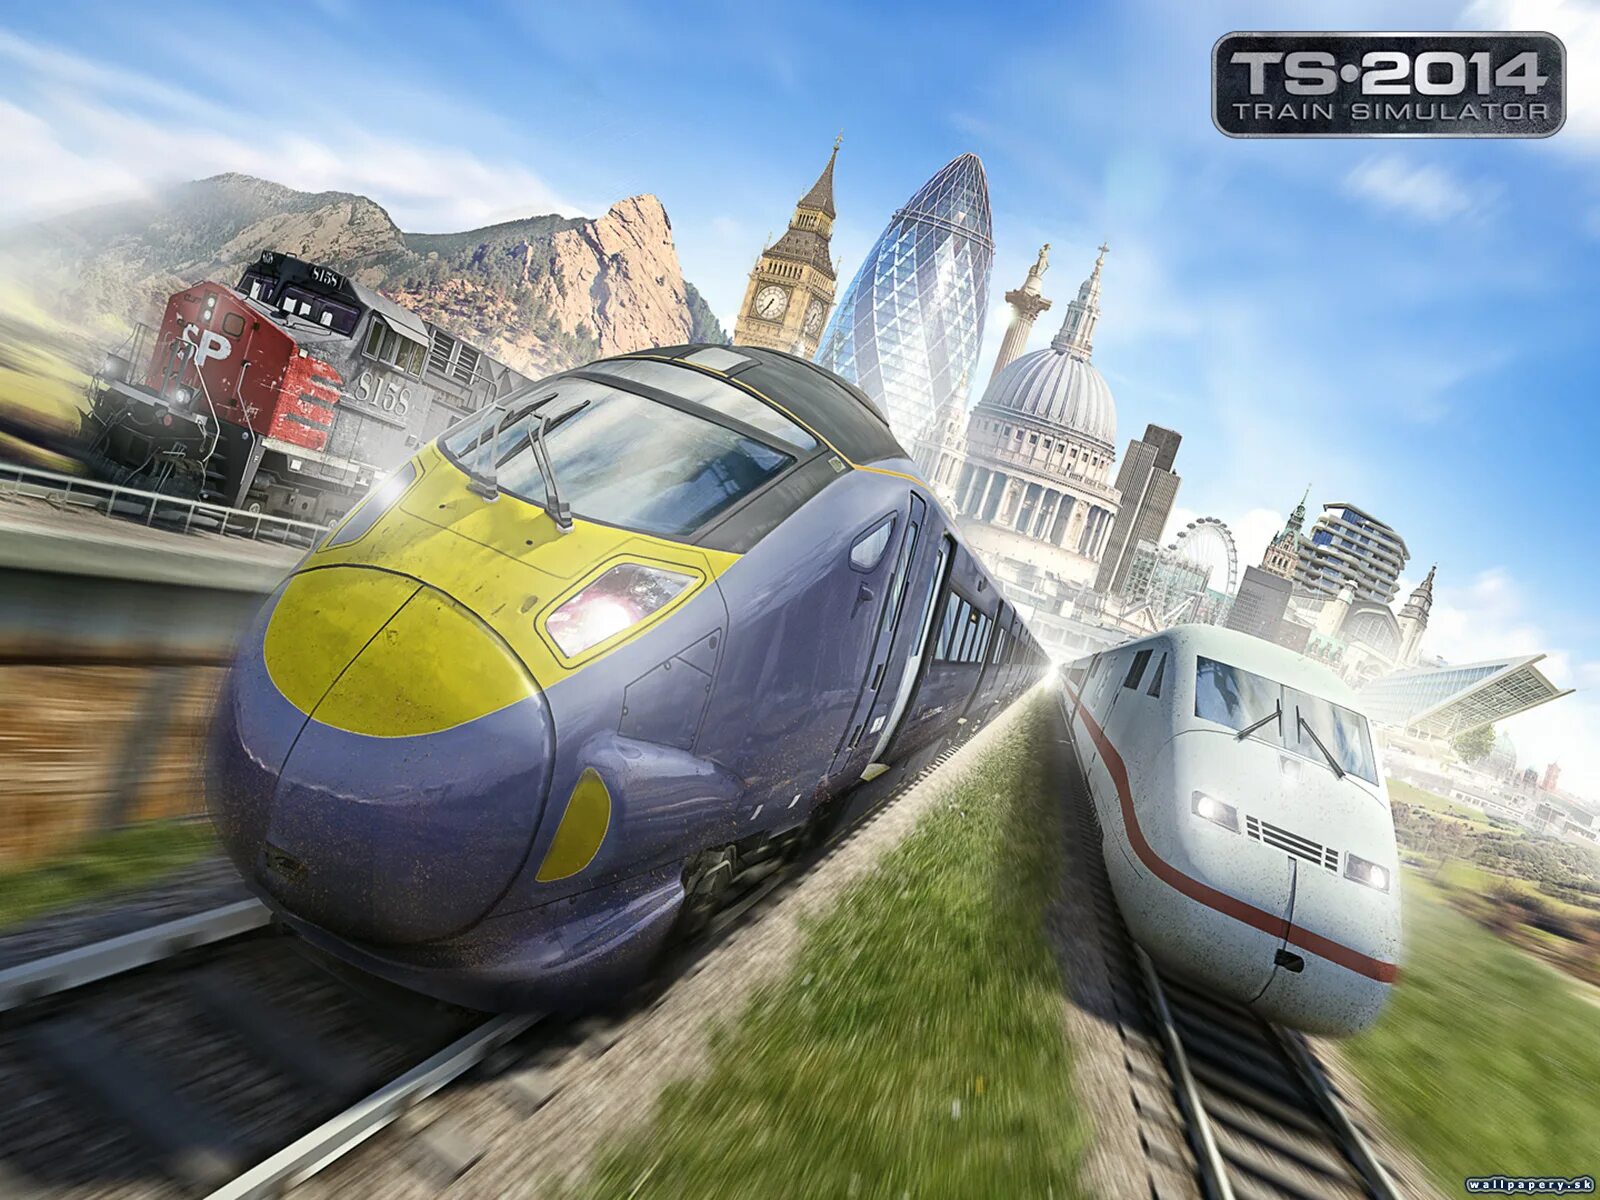 Сайт гранд трейн. Train Simulator. Train Simulator 2014. Лакшери трейн симулятор. Игра поезда по рельсам.